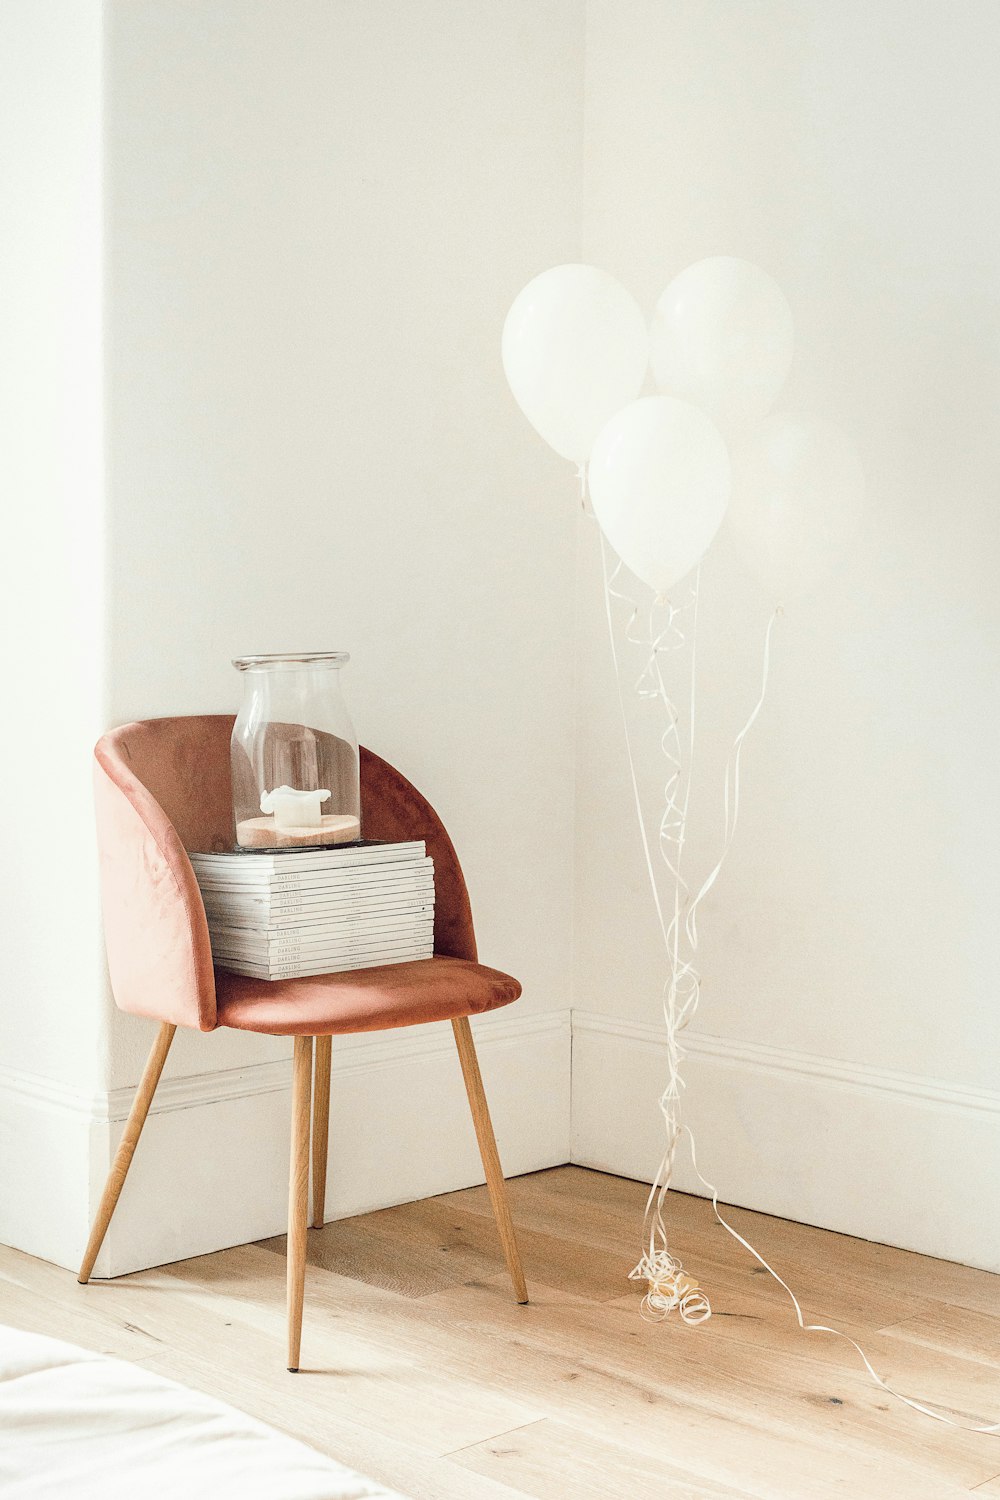 balões brancos ao lado do frasco no livro e na cadeira